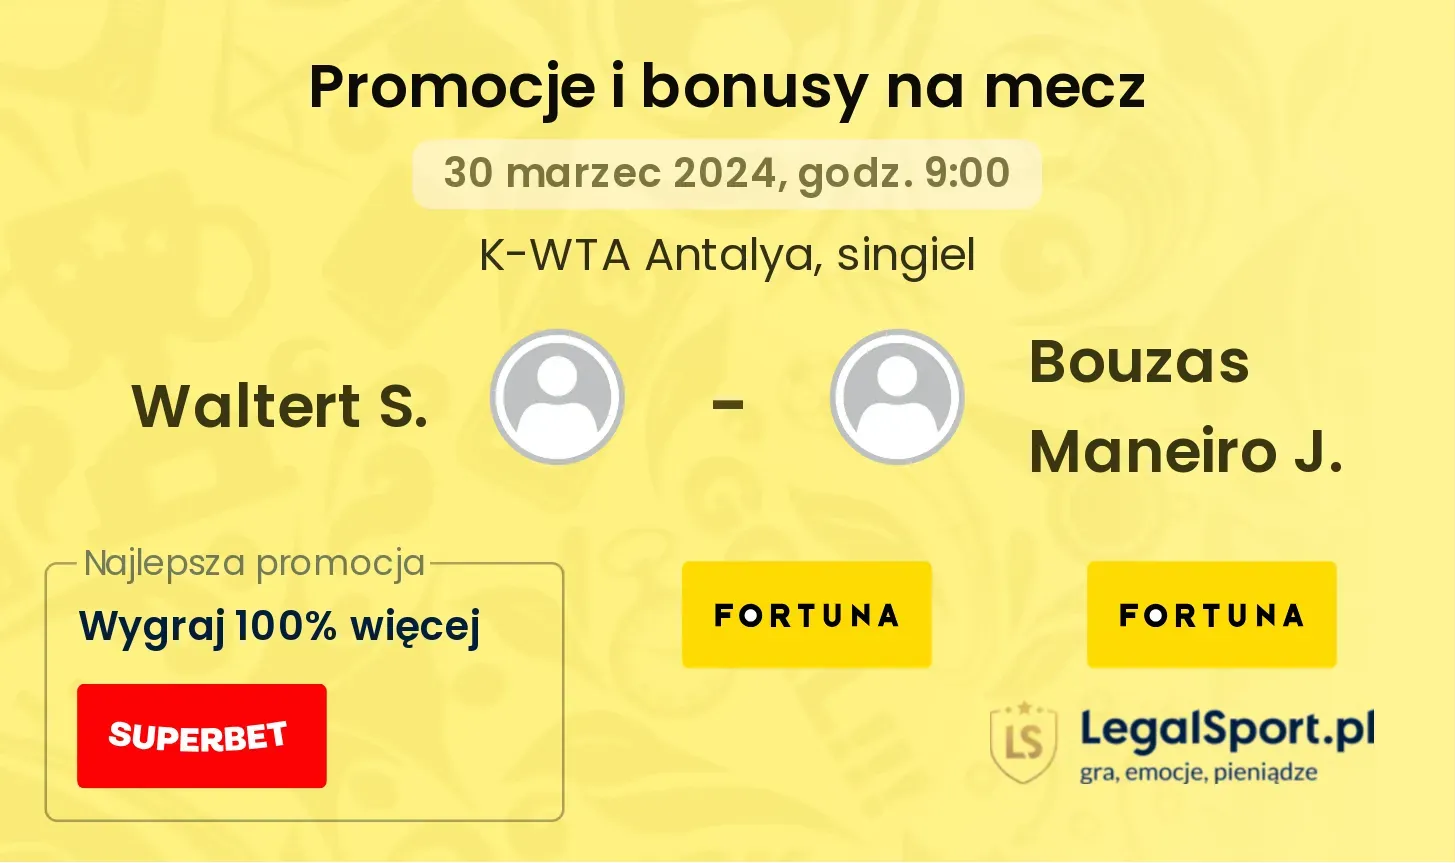 Waltert S. - Bouzas Maneiro J. promocje bonusy na mecz